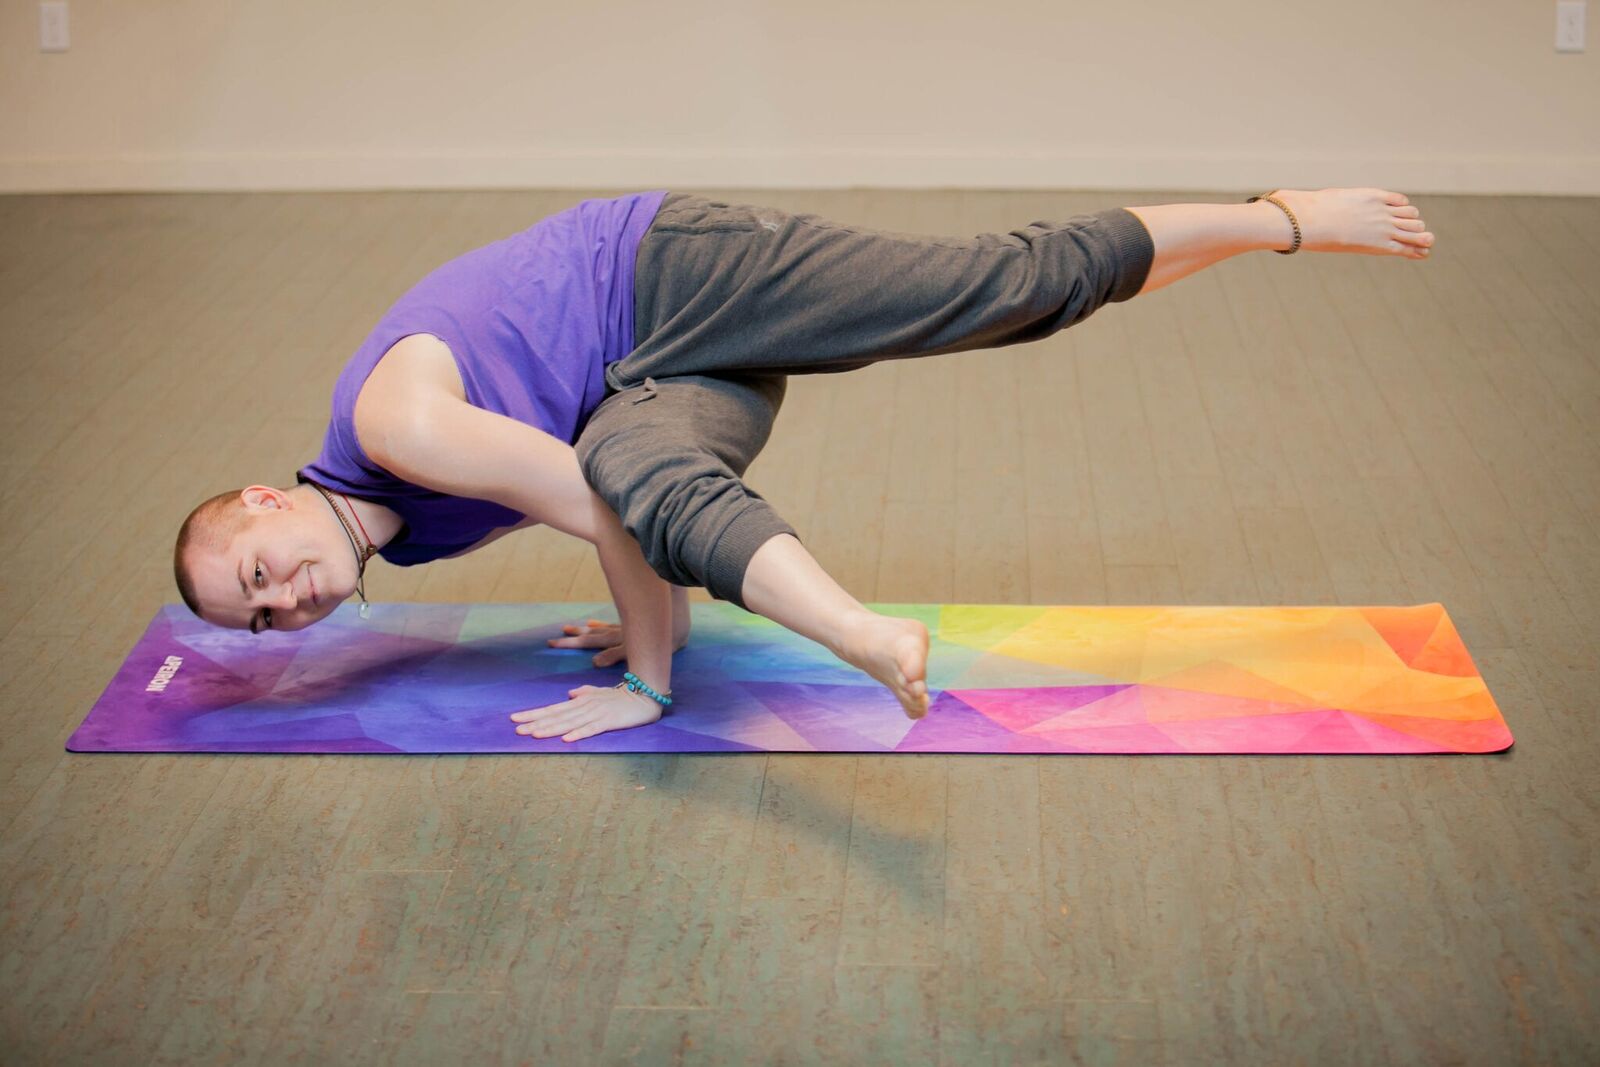 prAna E.C.O. Yoga Mat, Rich Sapphire, One Size, U6ECOS110 — Length